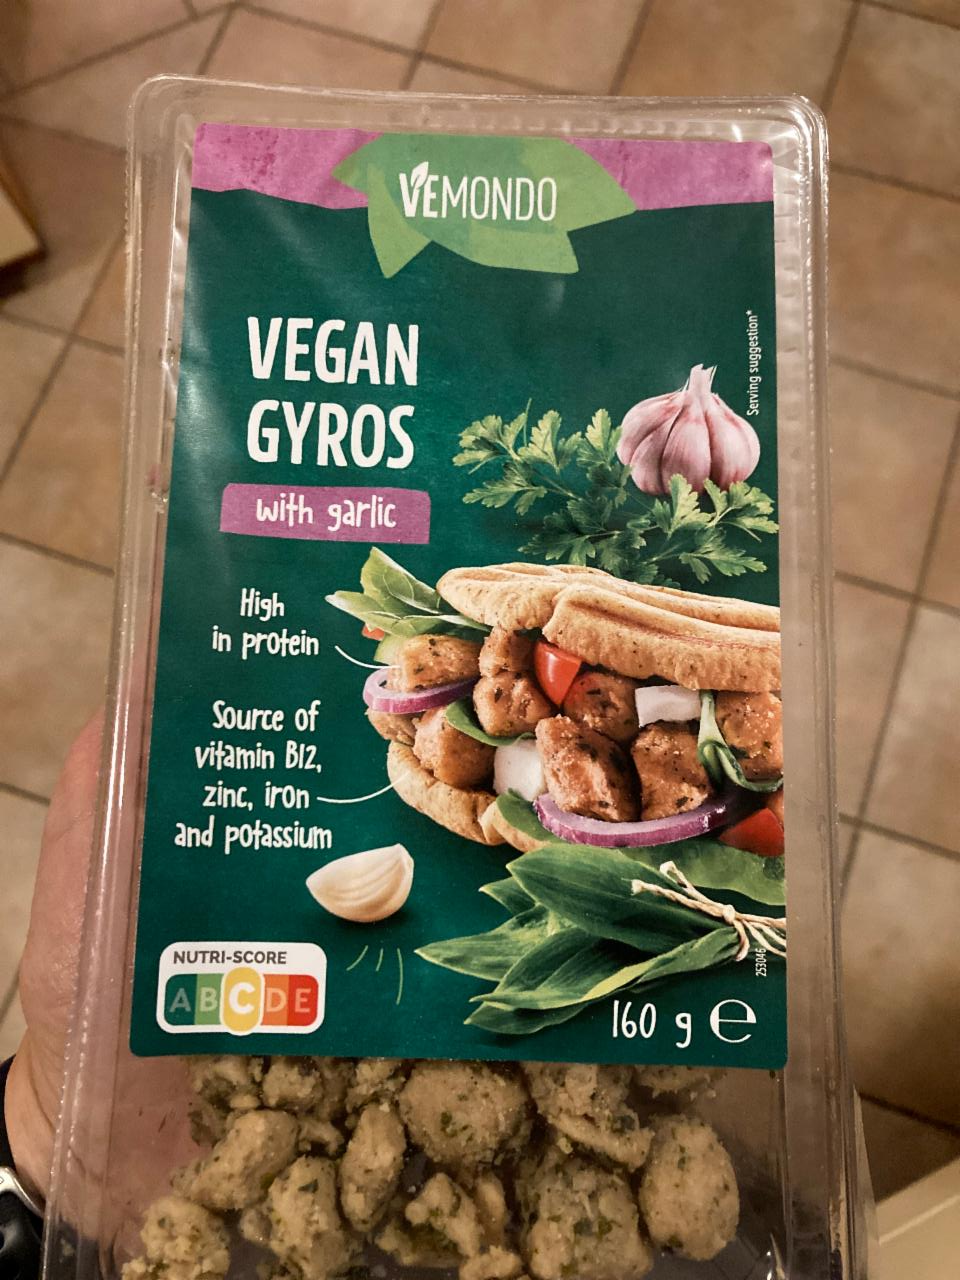 Vegan Gyros with garlic kJ a nutriční hodnoty - kalorie, Vemondo